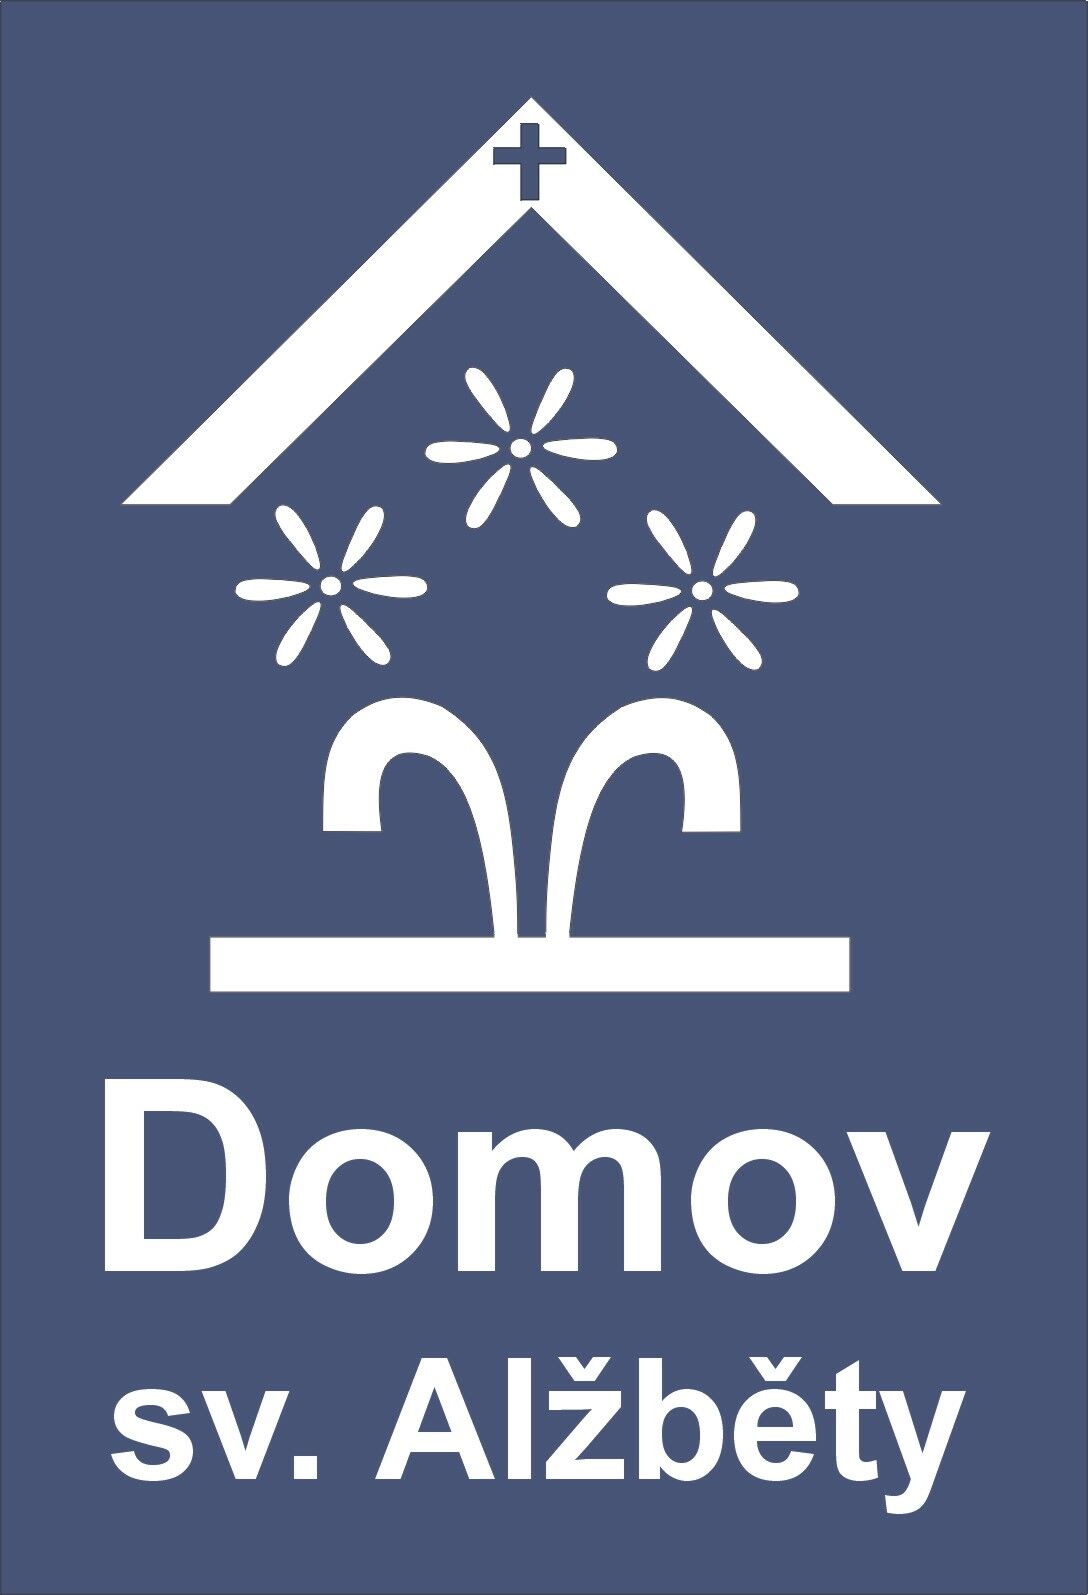 logo Domov sv. Alzbety327